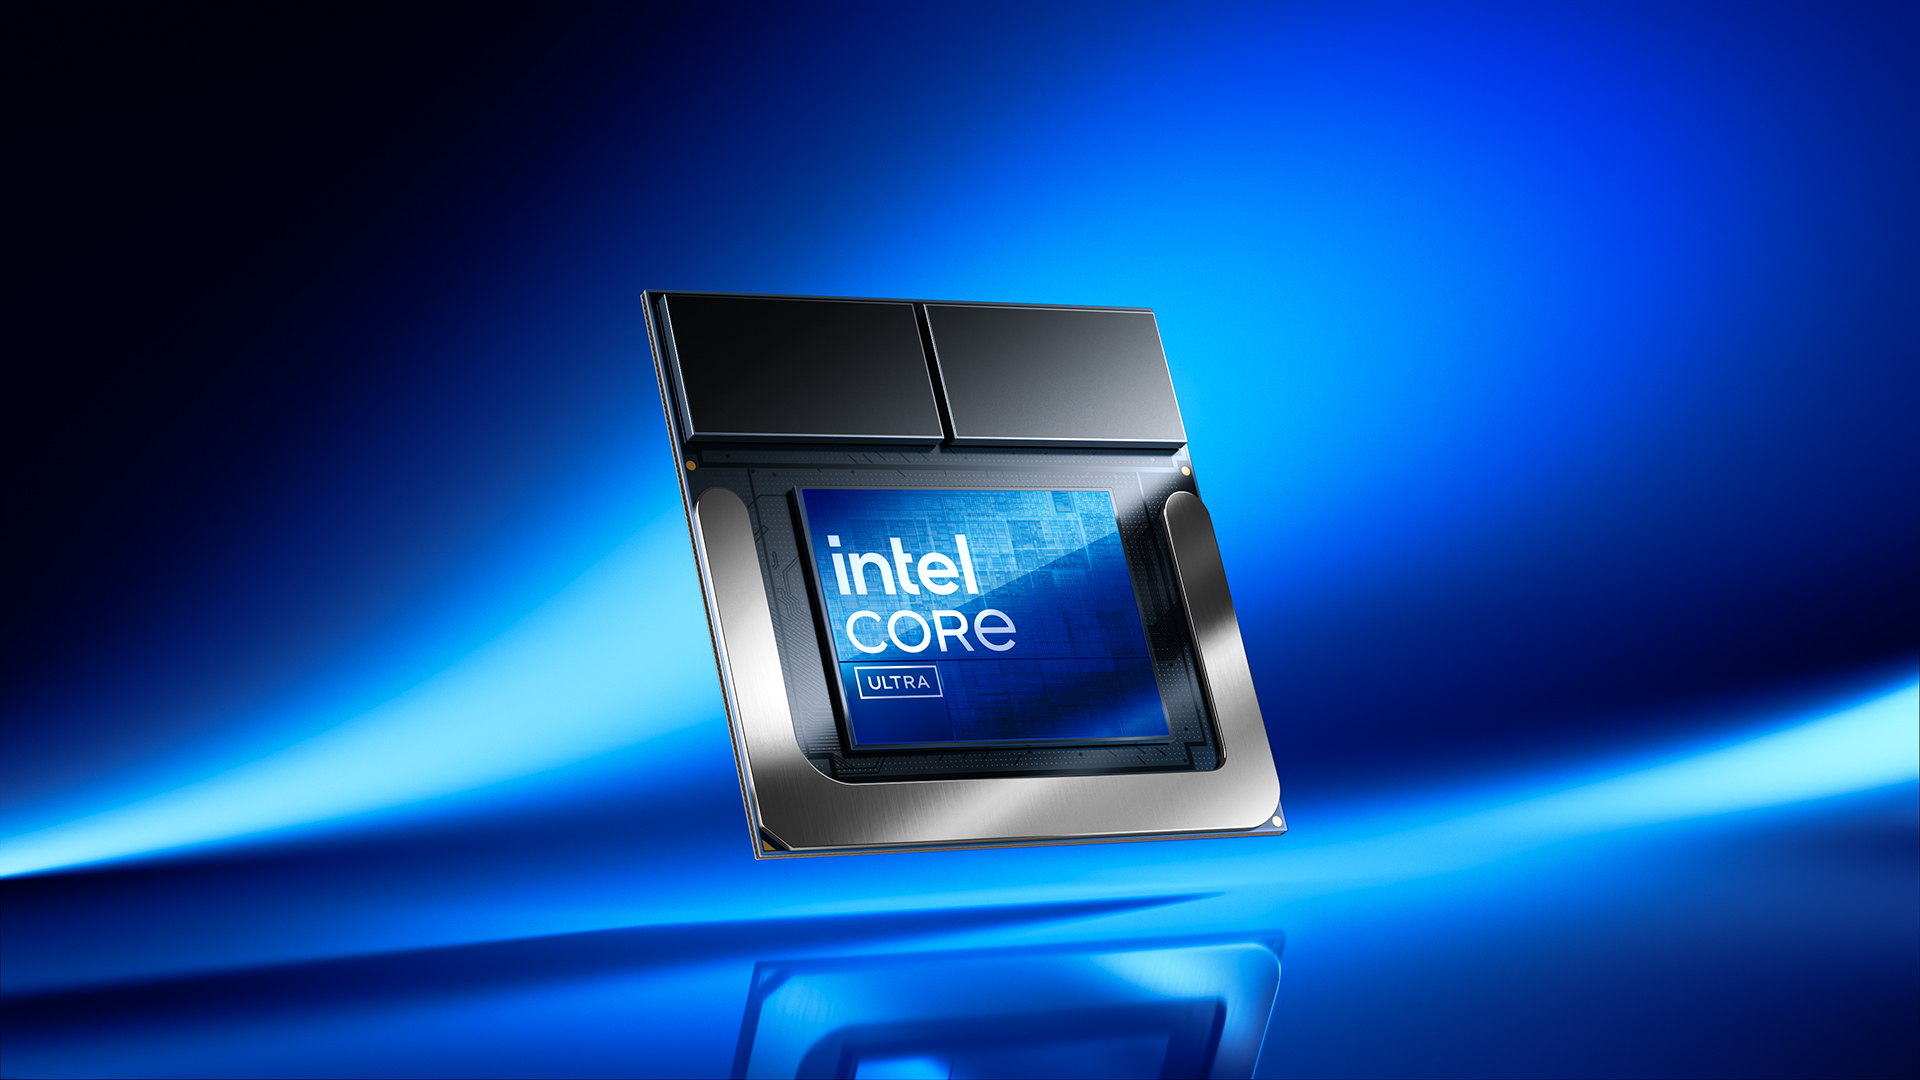 Intel verspricht mit den neuen Lunar-Lake-Mobilprozessoren eine Revolution bei Leistung und Energieeffizienz